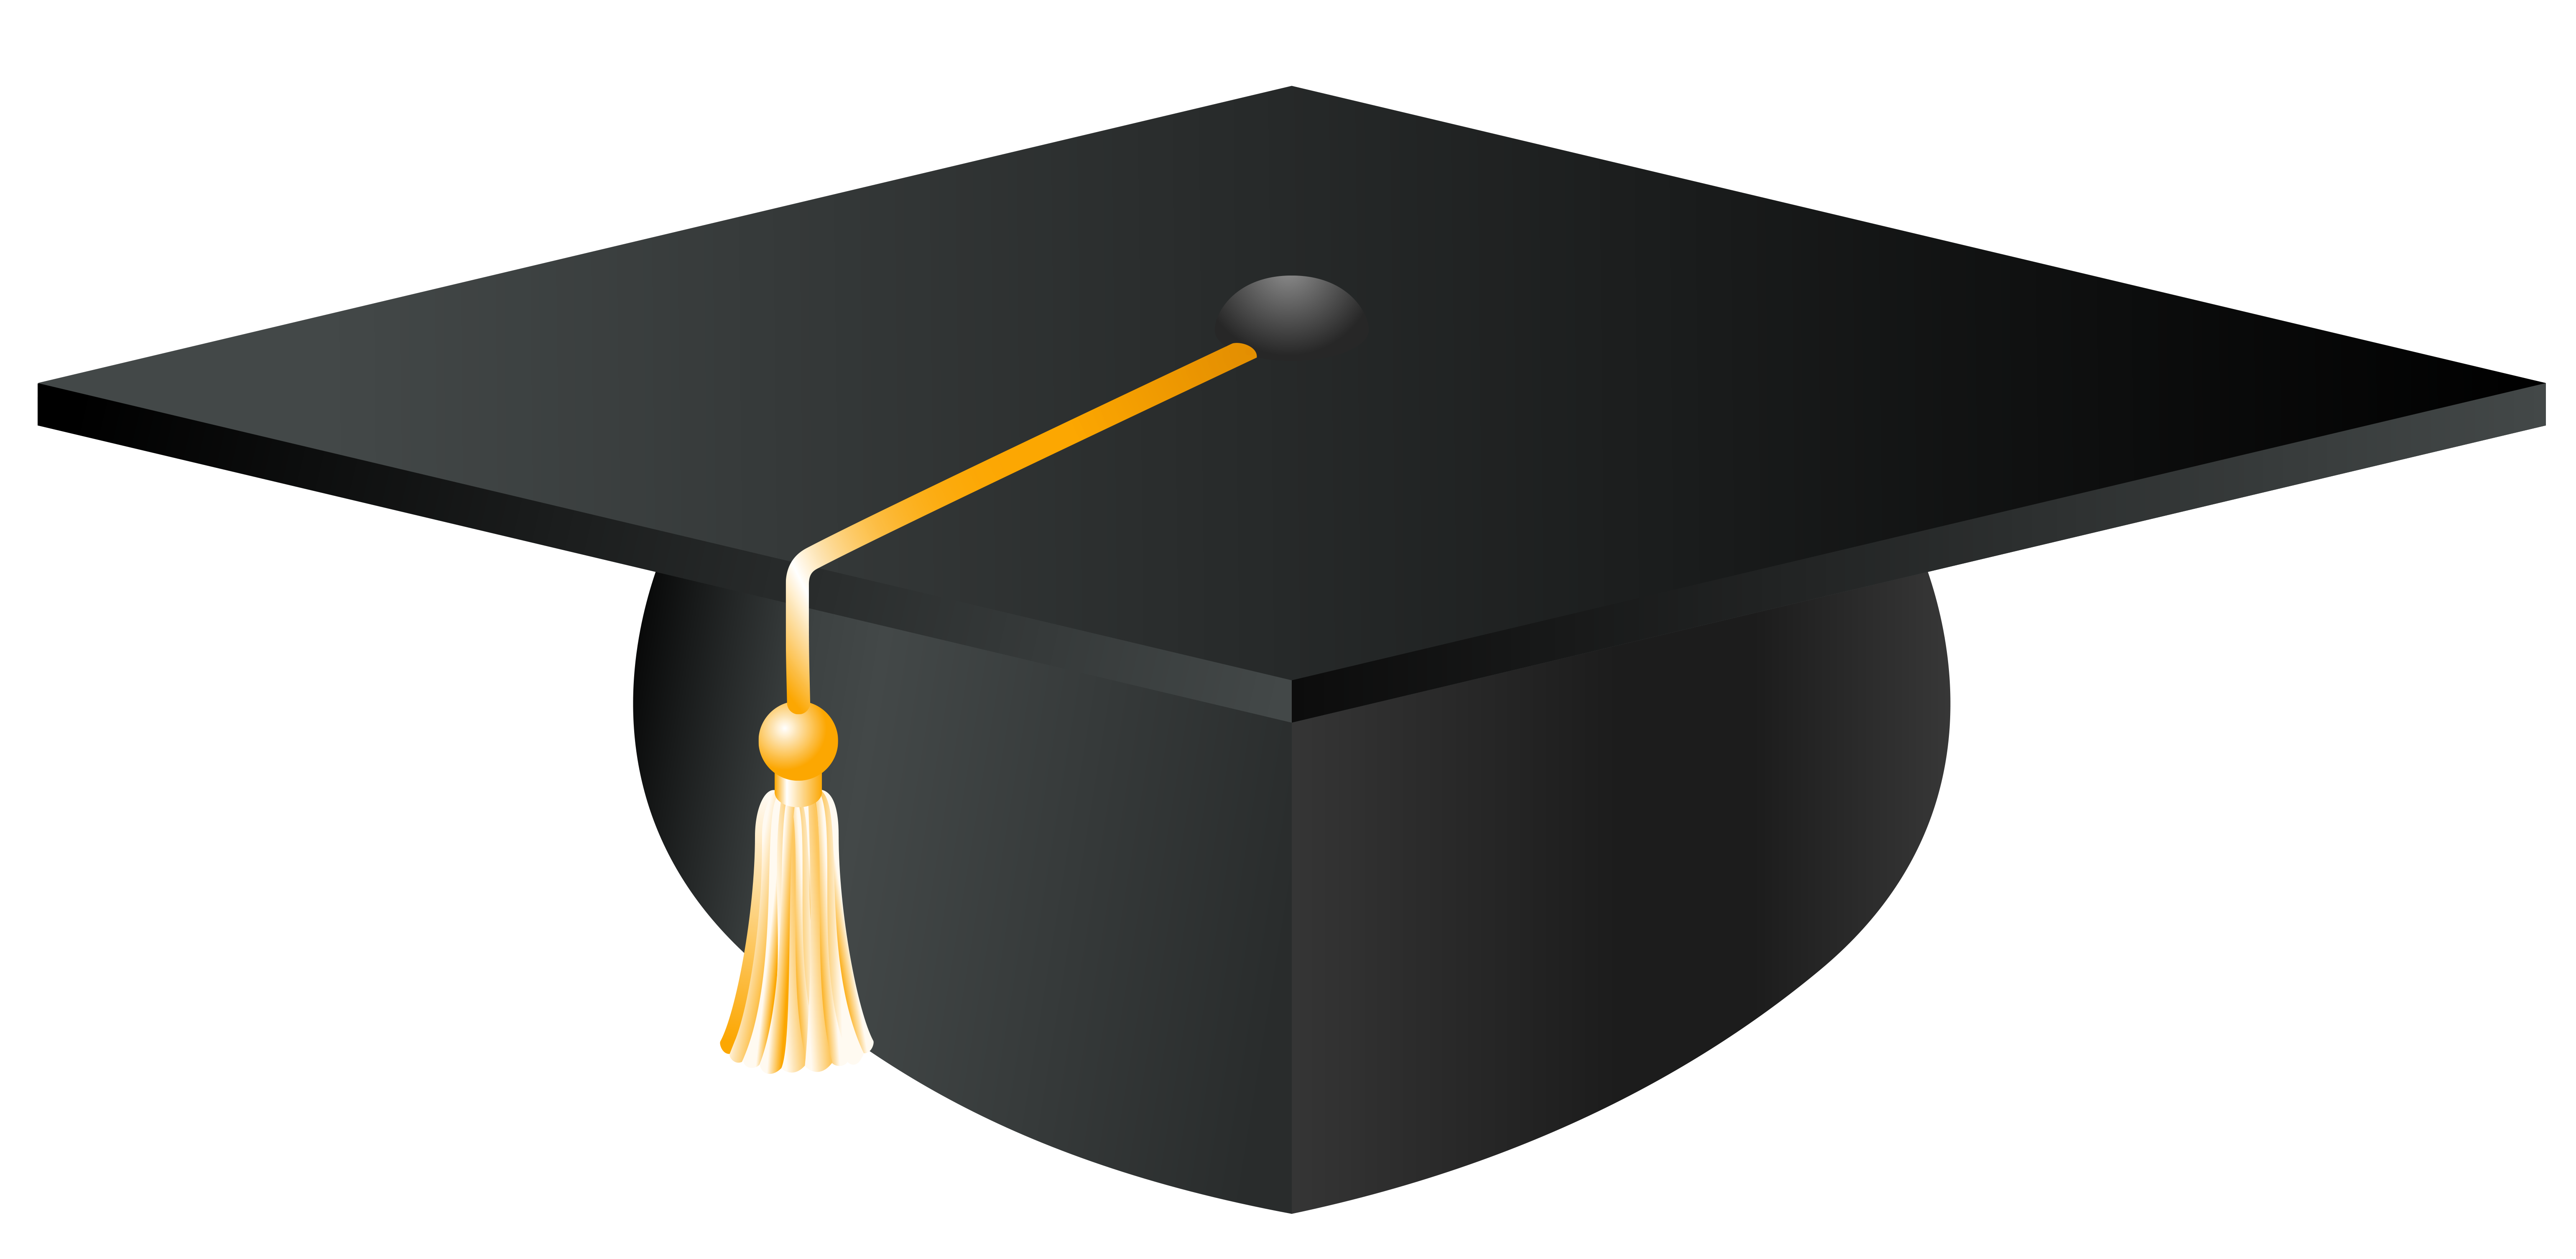 free clip art of a graduation cap - photo #46